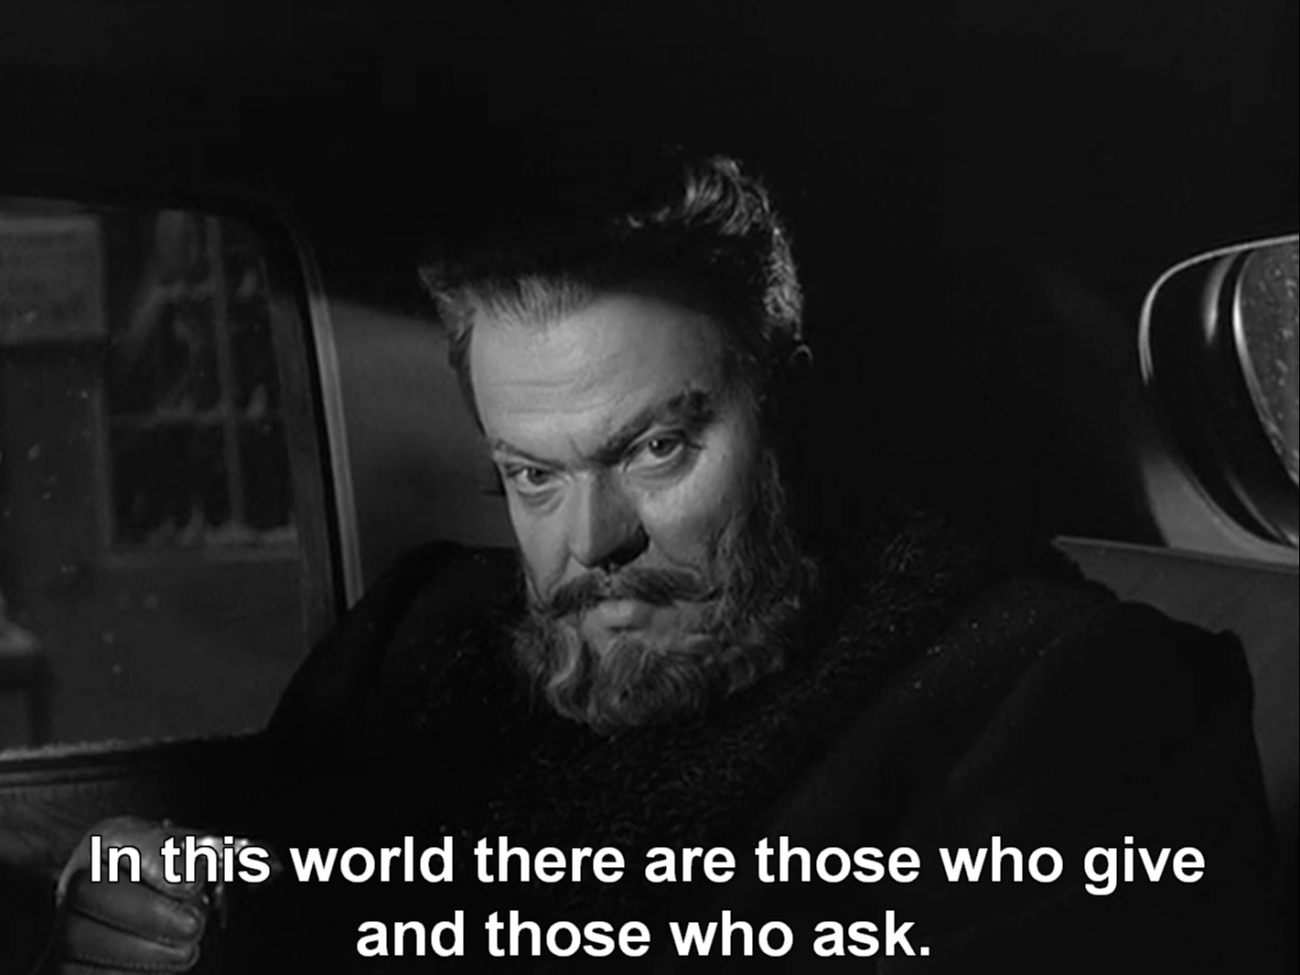 Welles v jednom z jeho méně známých snímků - Pan Arkadin - důvěrná zpráva. Studio udělalo z filmu téměř nesrozumitelný blábol. Film se nepodařilo úplně dokonale restaurovat (existuje několik verzí), i tak je to jeden z nejlepších thrillerů vůbec.